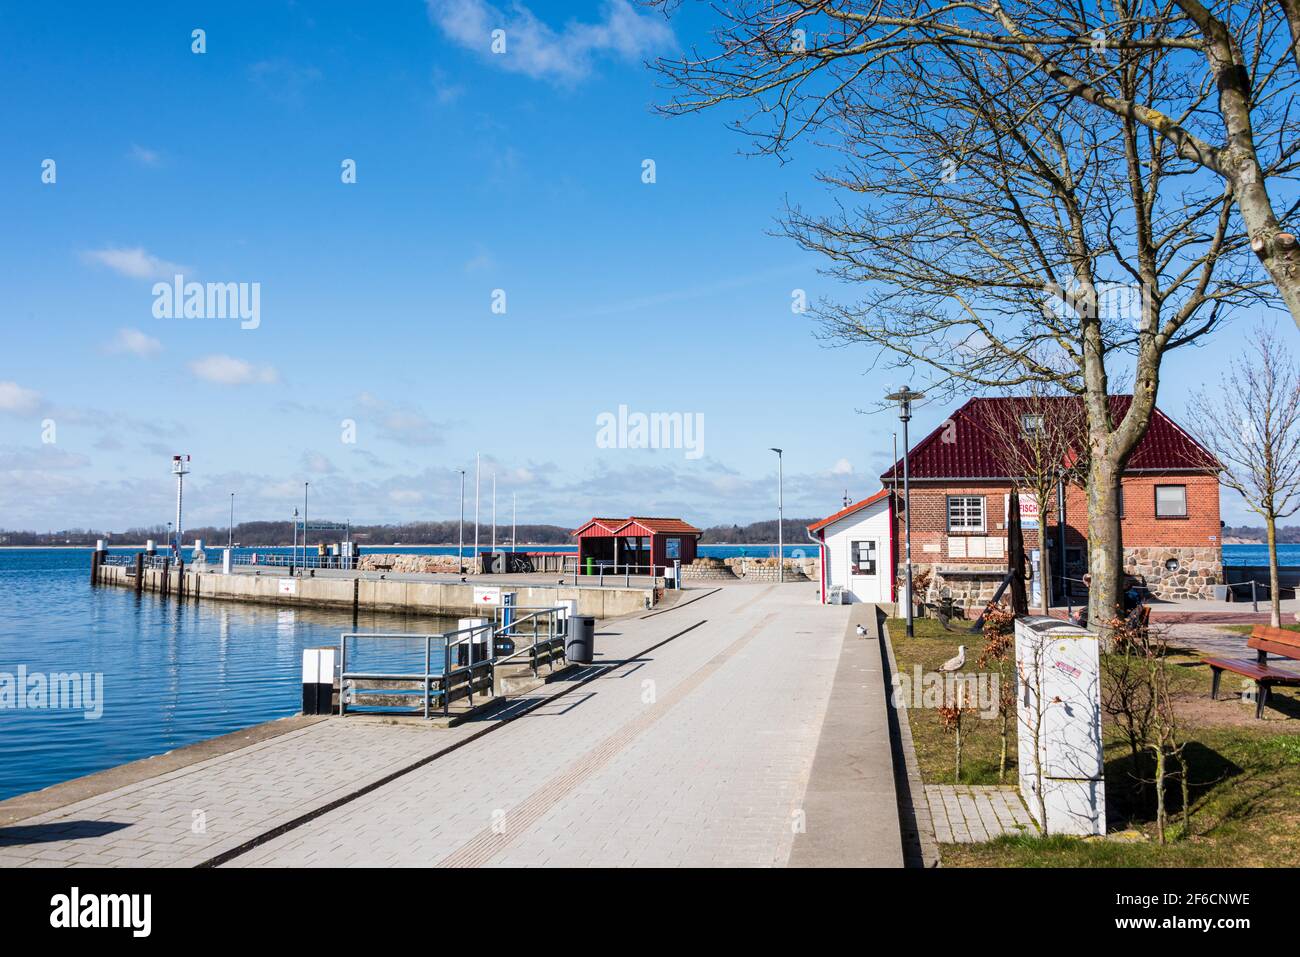 Rund um das Hafenbecken des Ostseebades Laboe erstrecken sich die Touristischen Attraktionen des Ortes Foto de stock